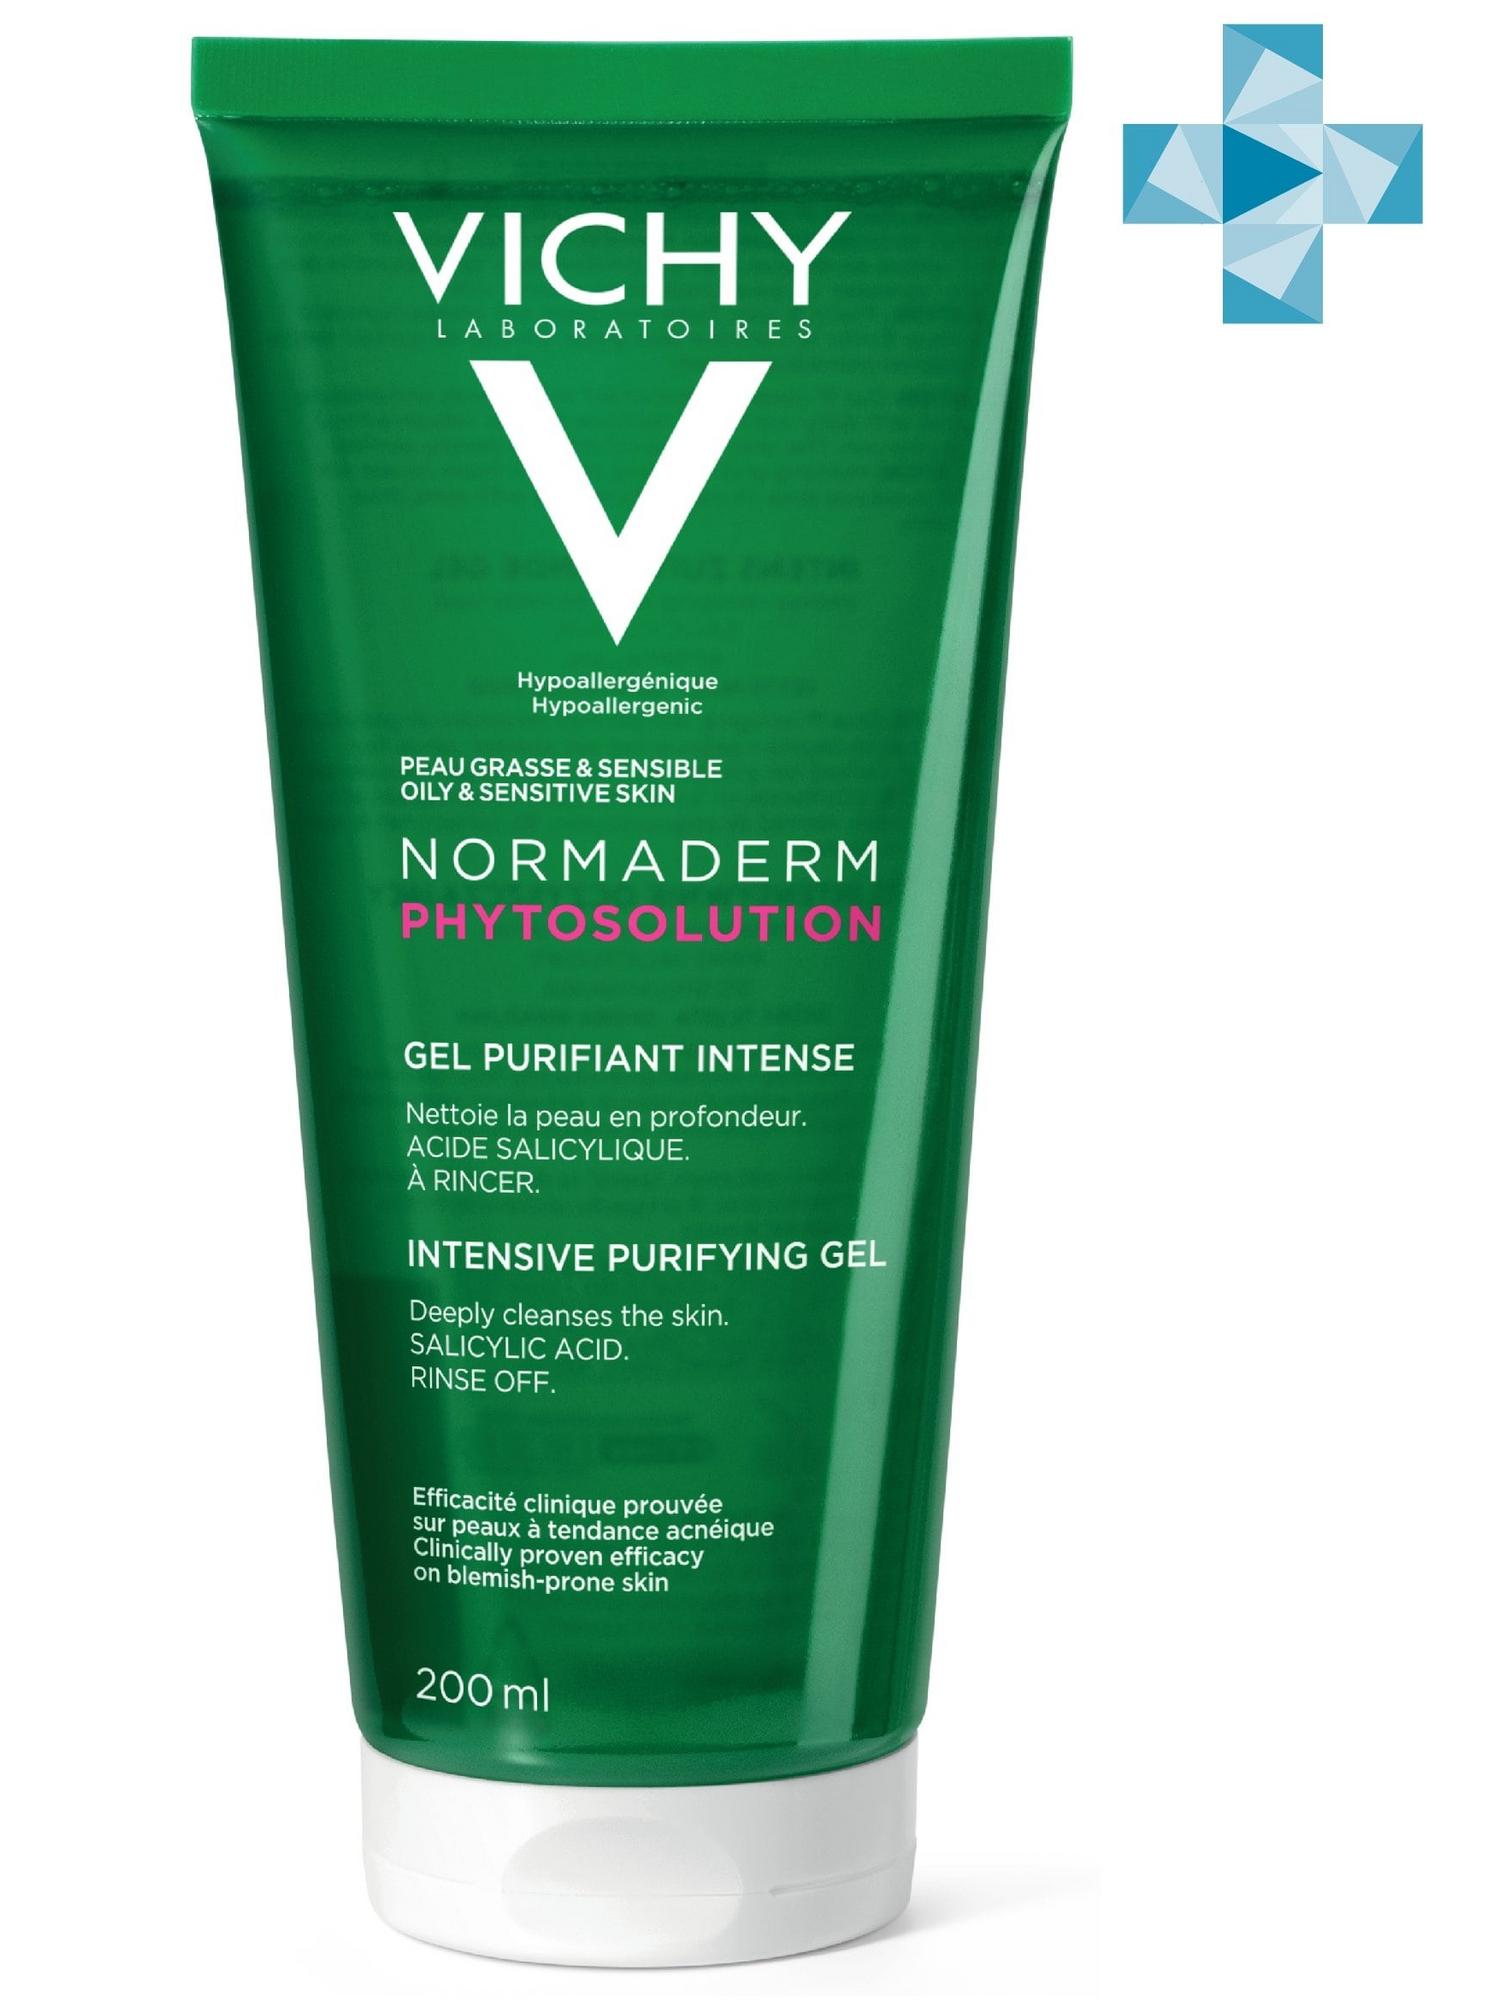 Vichy Очищающий гель для умывания для жирной и проблемной кожи Phytosolution, 200 мл (Vichy, Normaderm) цена и фото